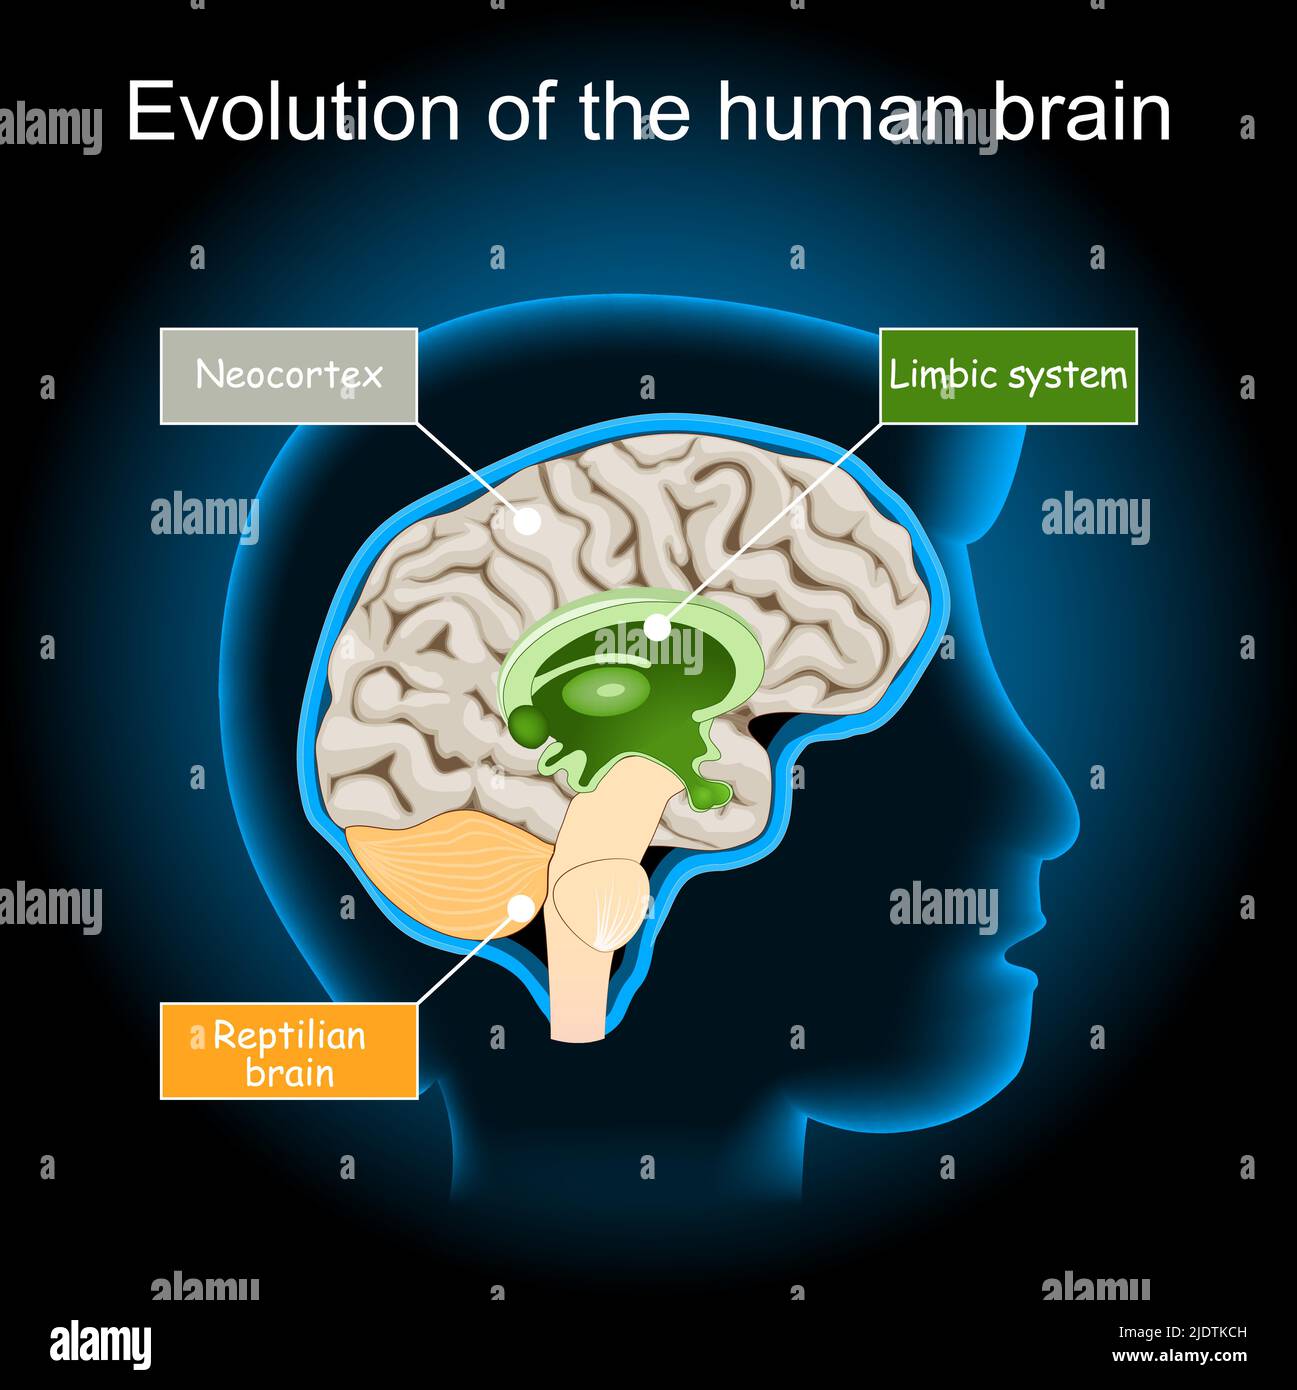 Evolution des Gehirns vom Reptilienhirn zum limbischen System und Neokortex. Hypothese des Dreieinenhirns. Querschnitt des menschlichen Gehirns auf dunklem Hintergrund. Stock Vektor